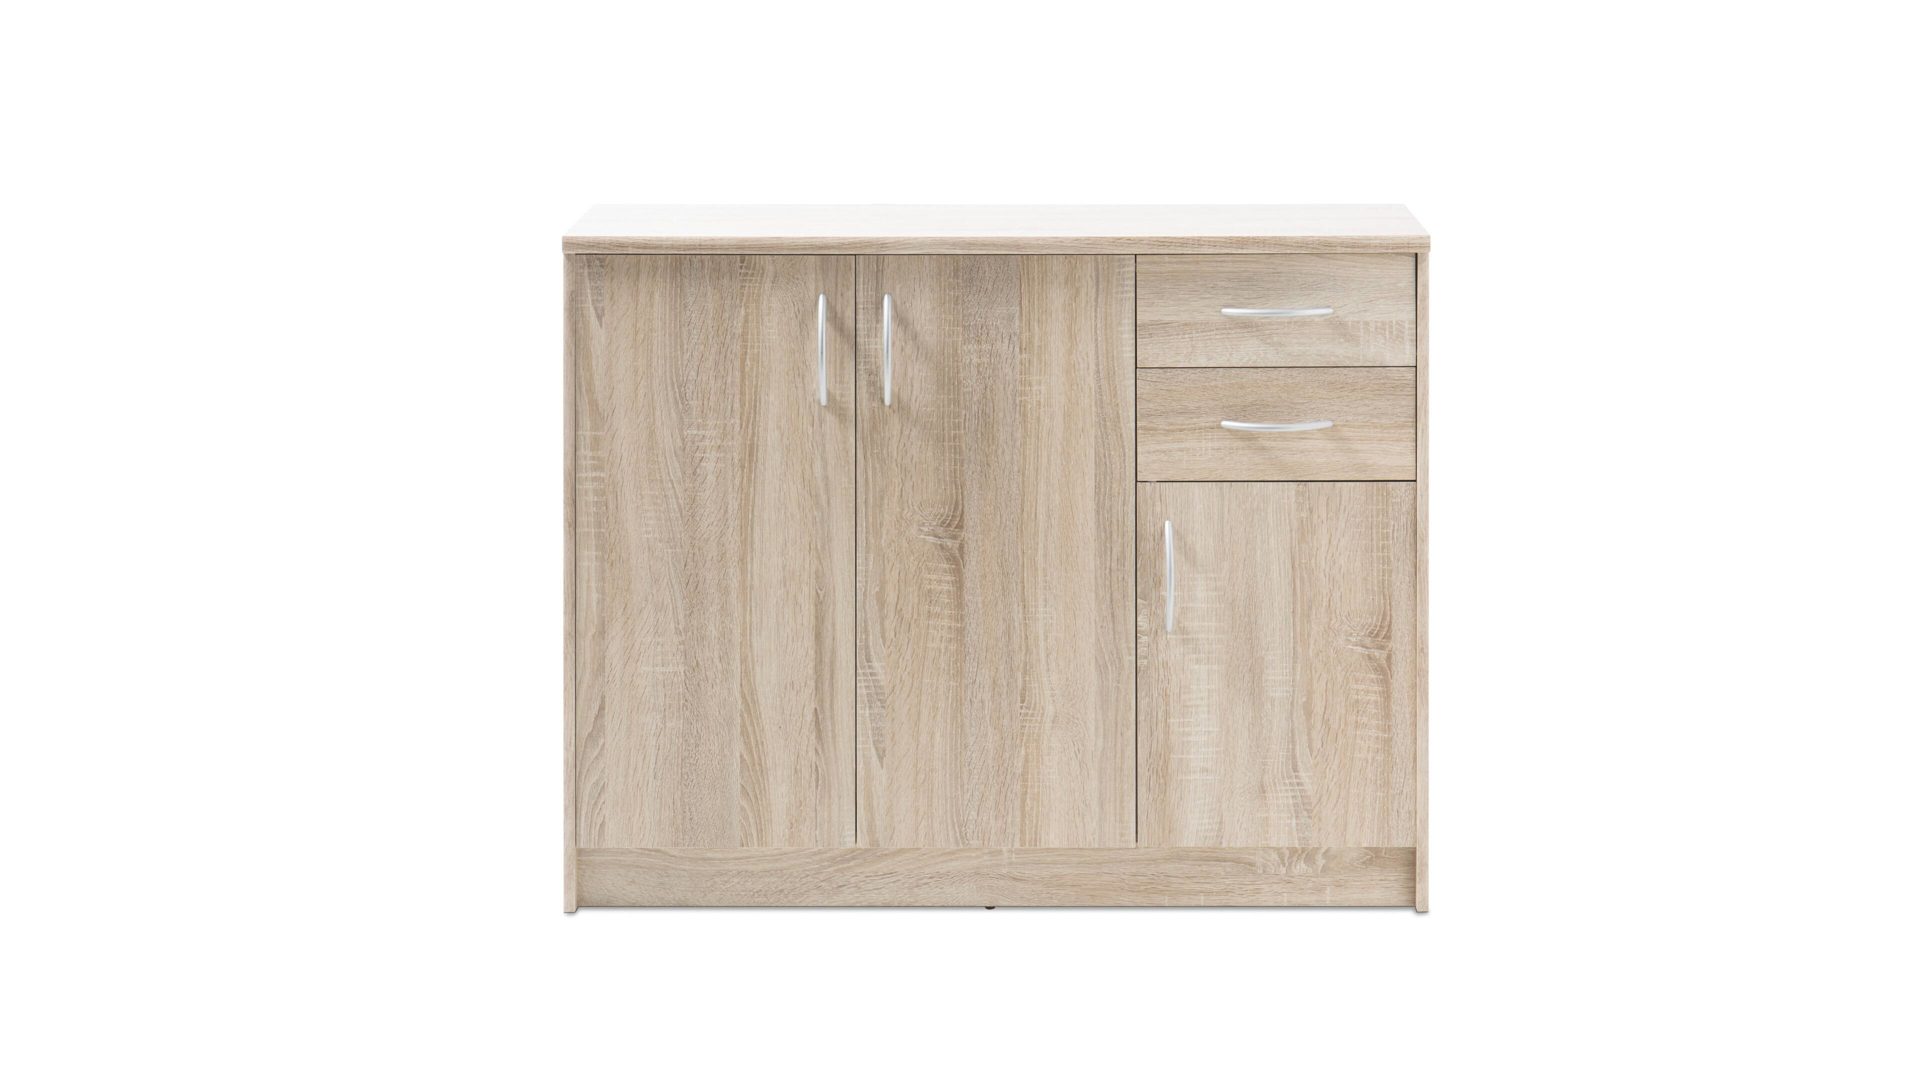 Kombikommode Bega consult aus Holz in Holzfarben Kombikommode - Schrank Sonoma eichefarbene Kunststoffoberflächen – drei Türen, zwei Schubladen